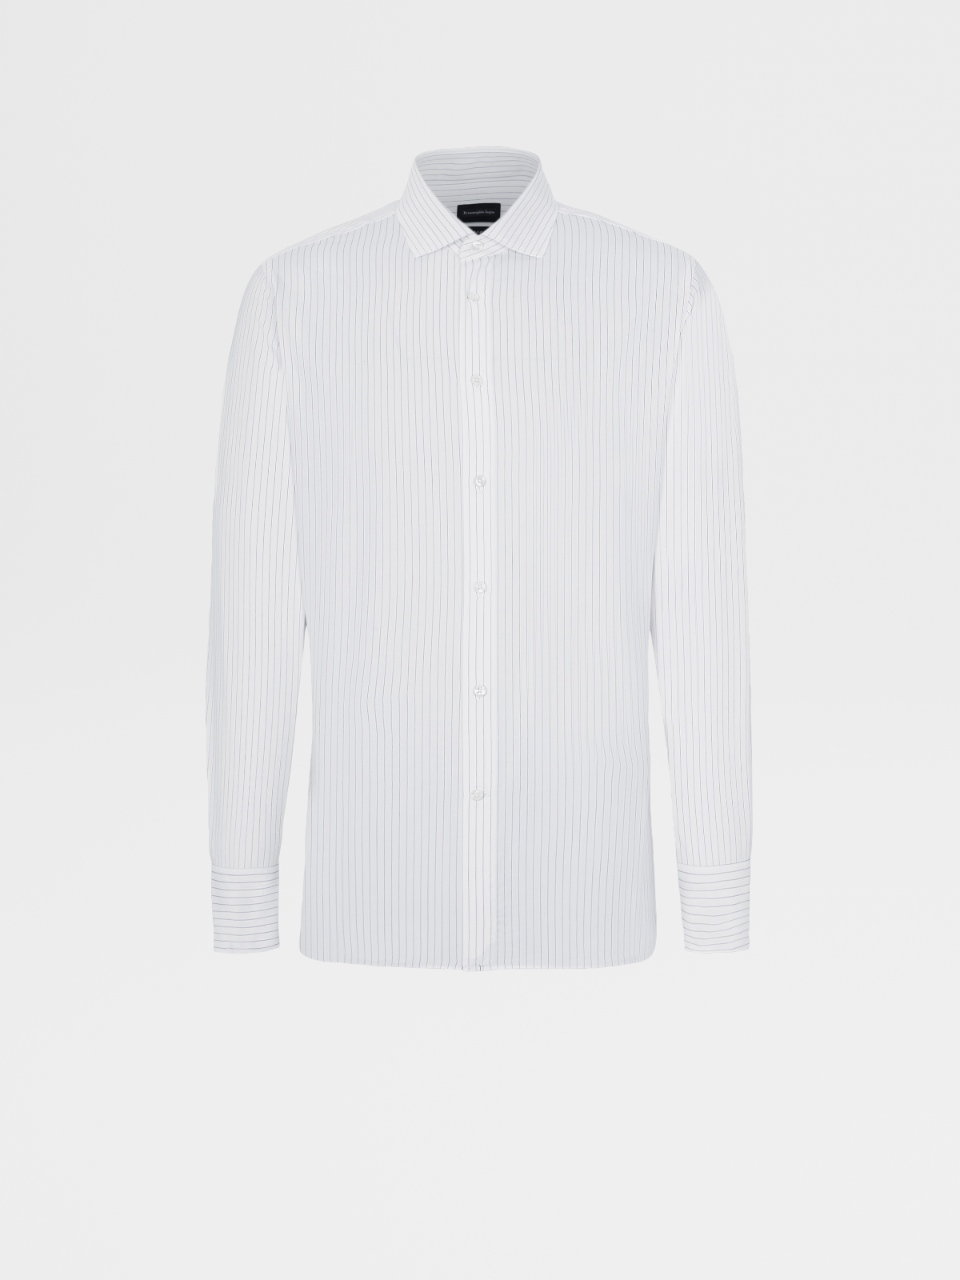 墨蓝色条纹Trecapi棉质精裁衬衫，Milano合身版型